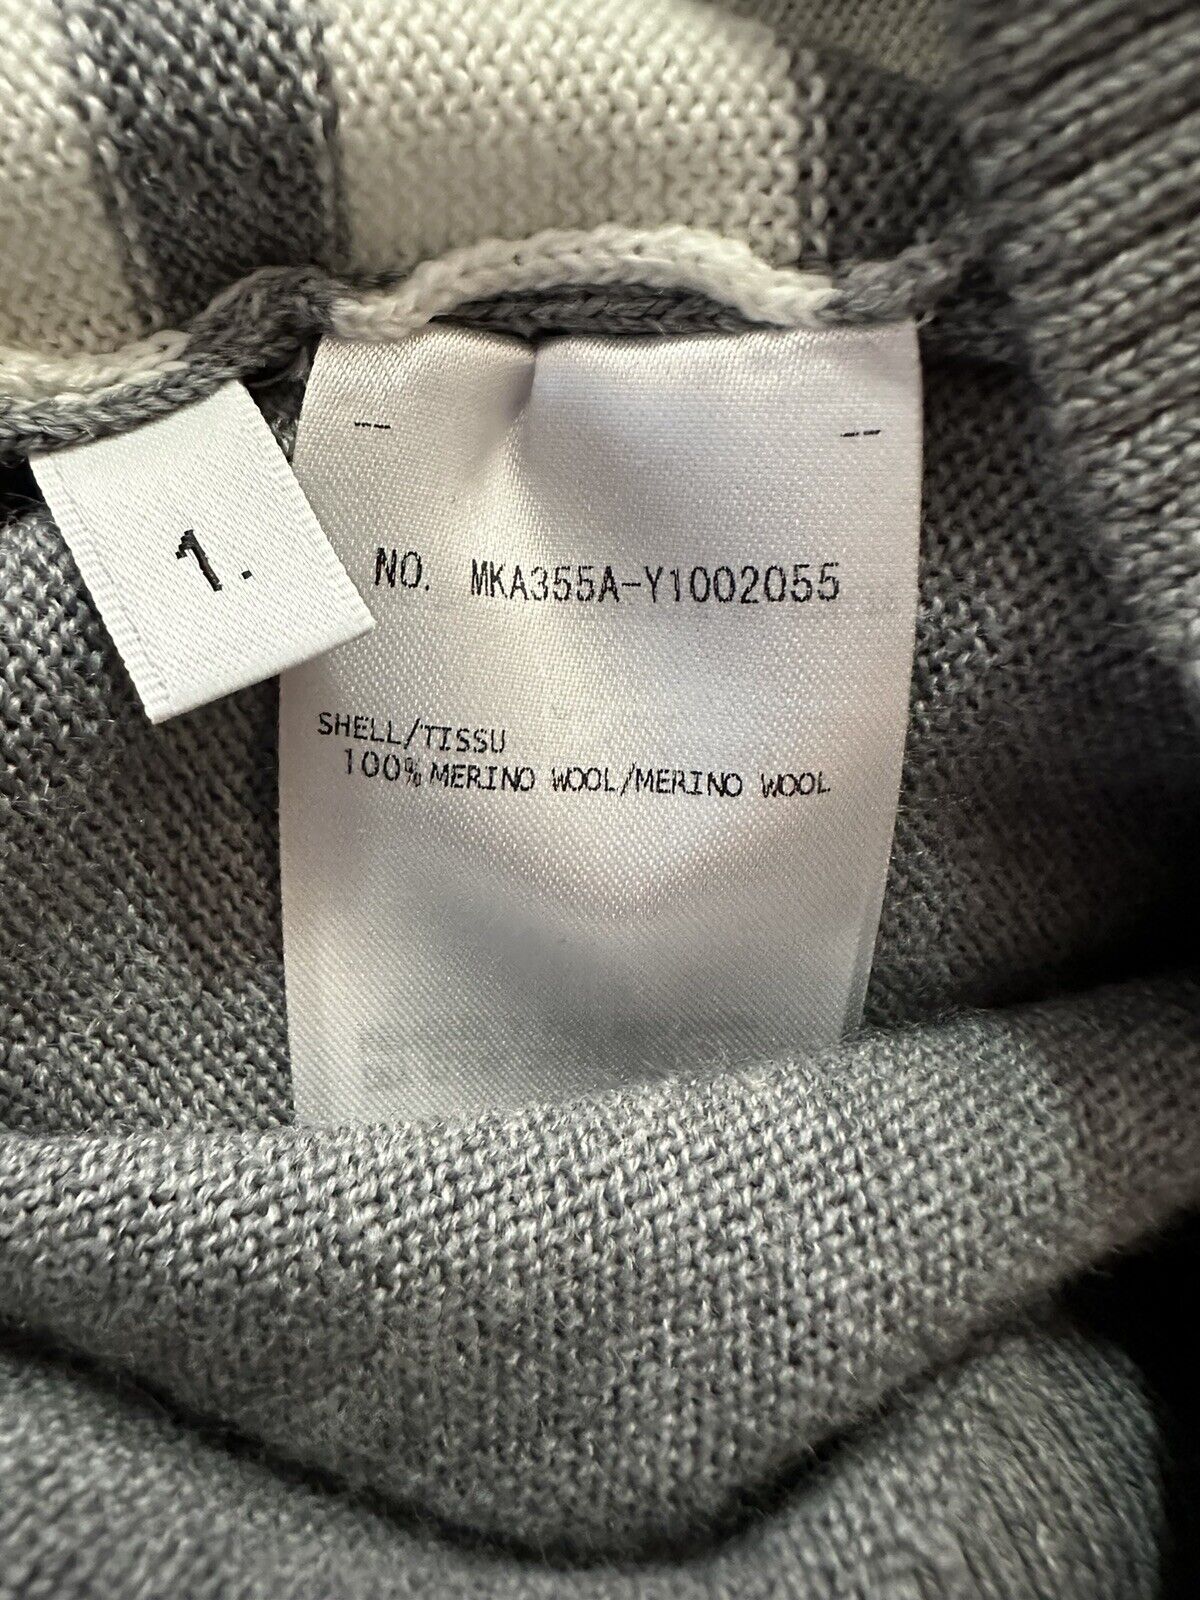 Мужской свитер NWT Thom Browne из мериносовой шерсти с мелированием, серый, размер 1 (S)